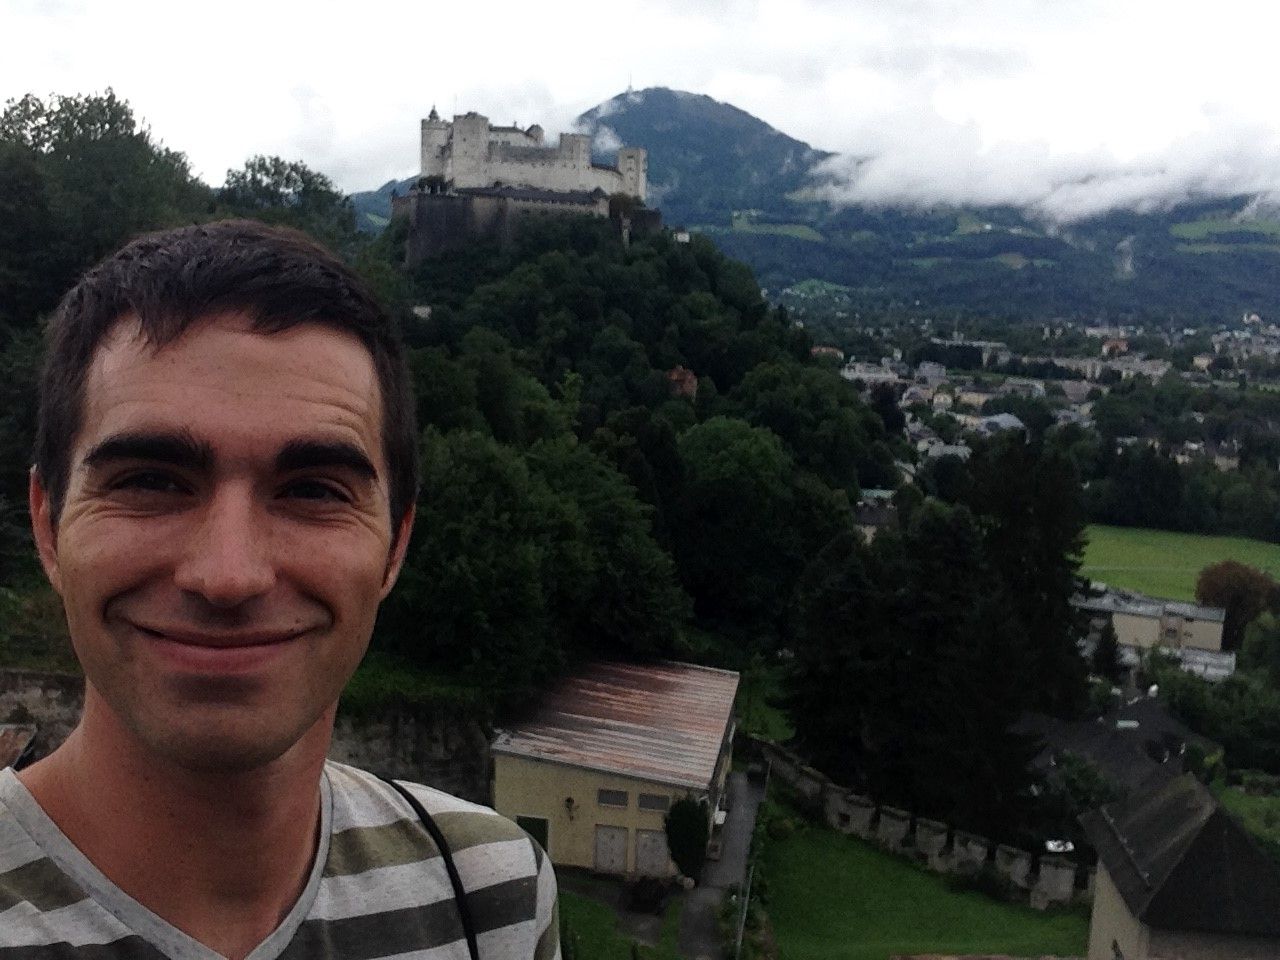 selfie photo in front of the Hohensalzburg Castle in Salzburg, Austria.